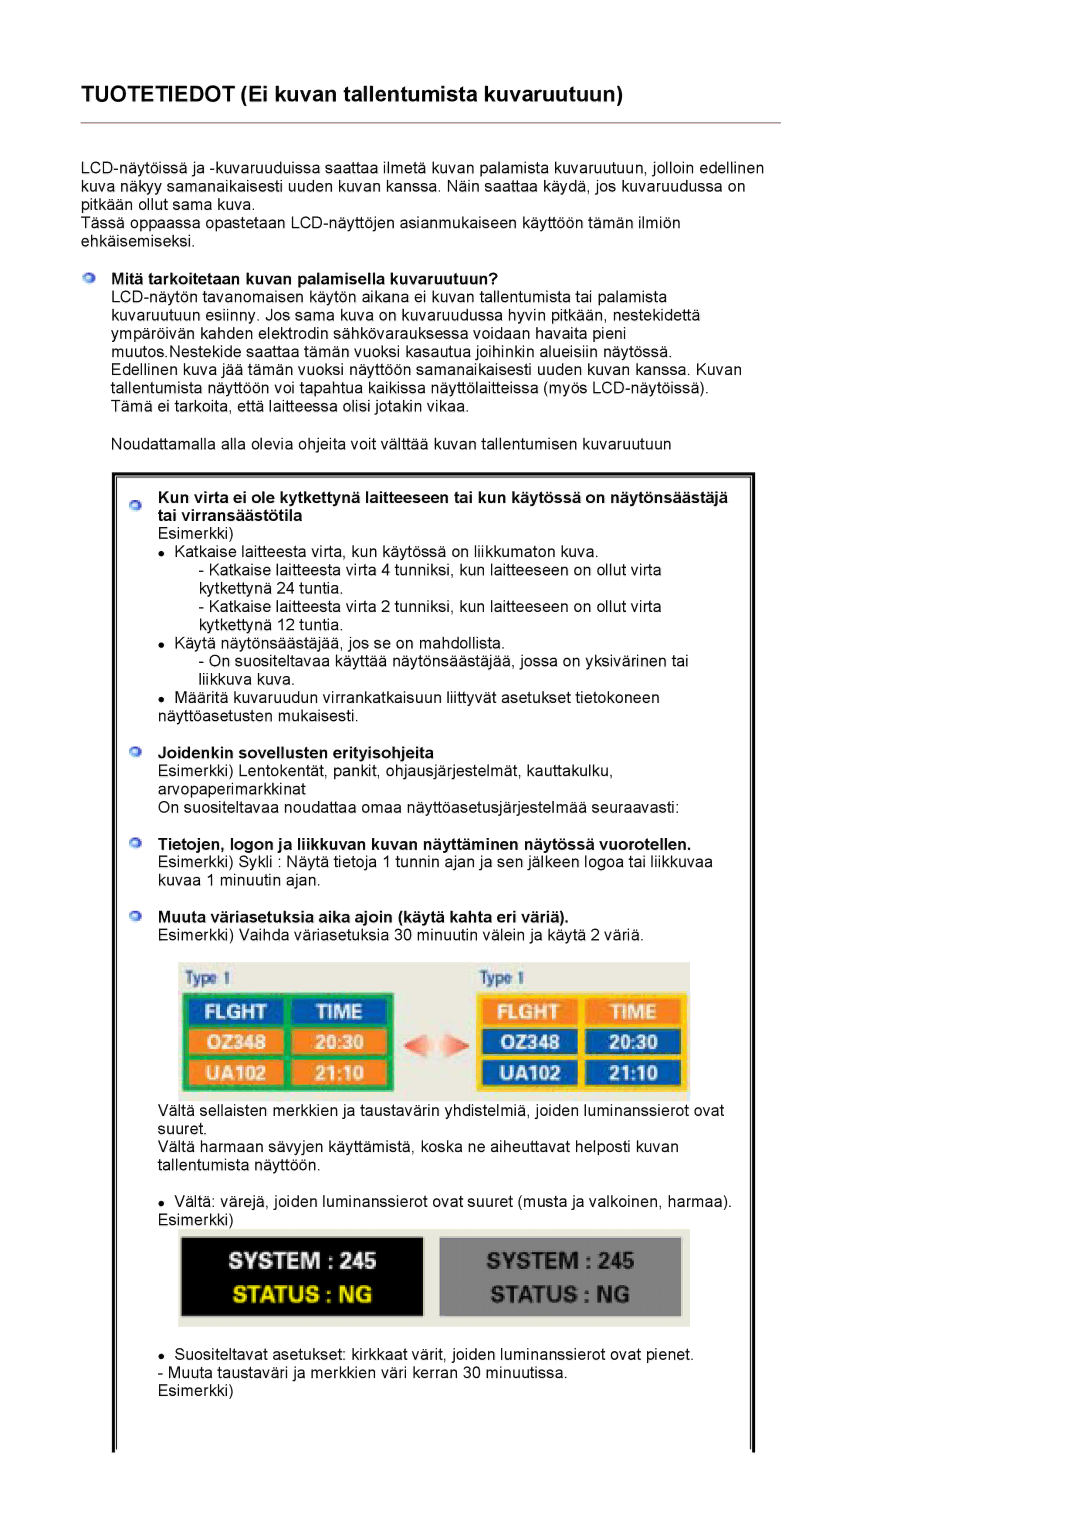 Samsung LT17GSESS/EDC manual Mitä tarkoitetaan kuvan palamisella kuvaruutuun?, Joidenkin sovellusten erityisohjeita 